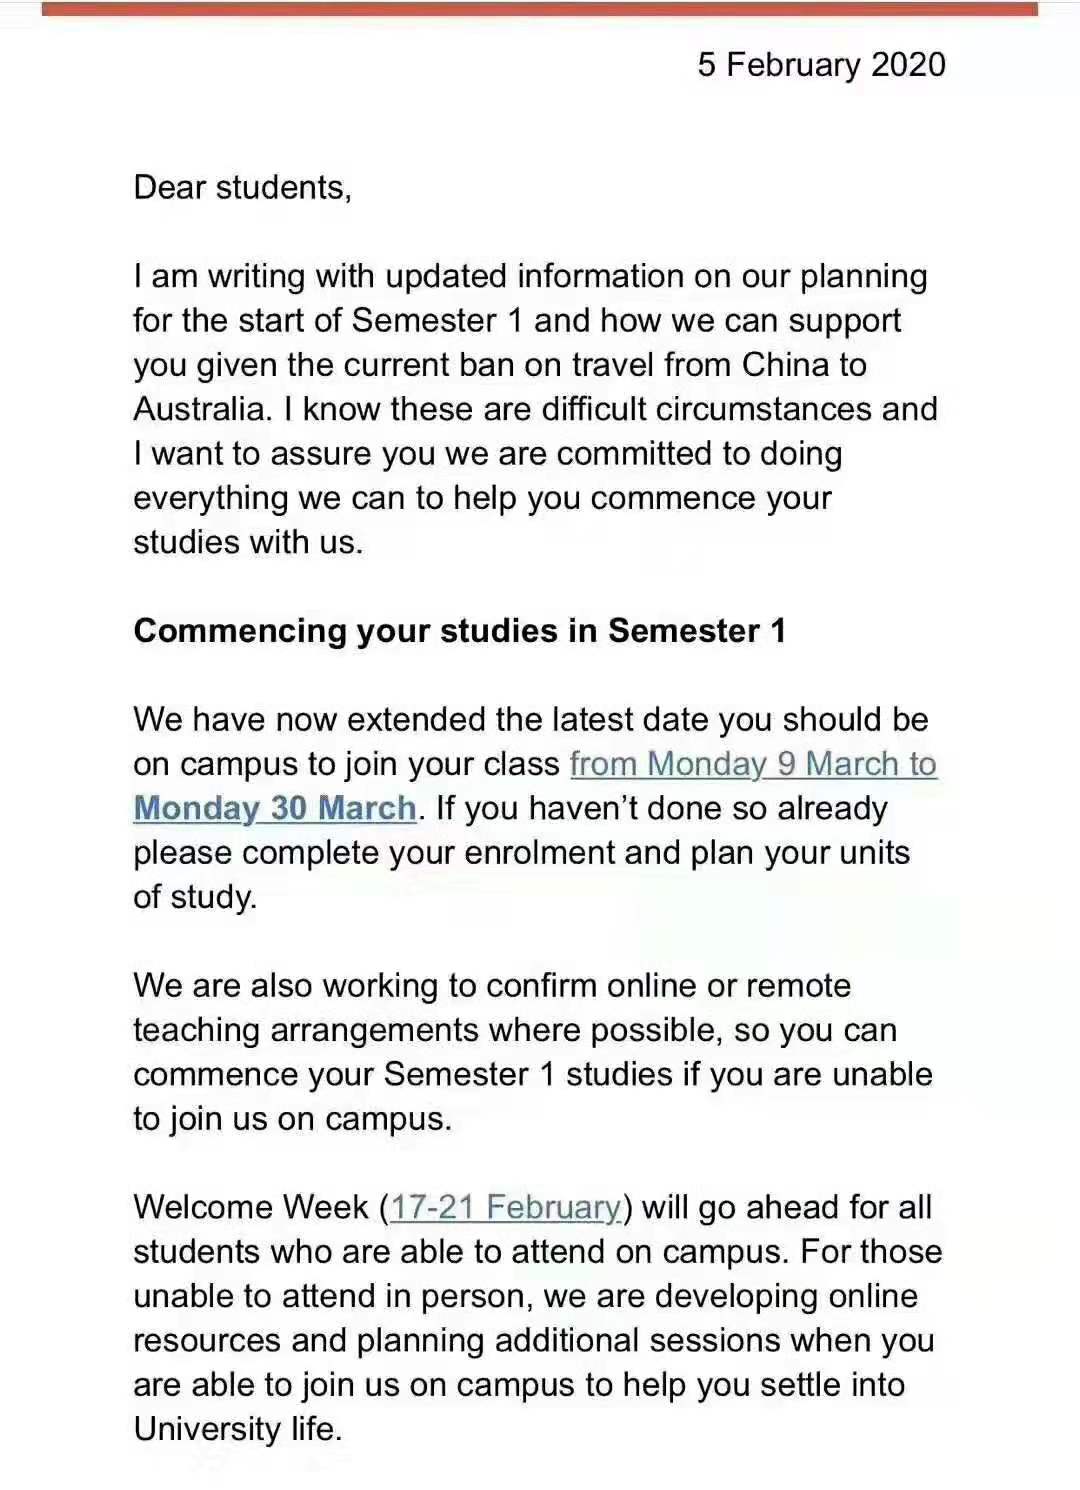 悉尼大学开学时间更新为2020年3月30日 ​​​​